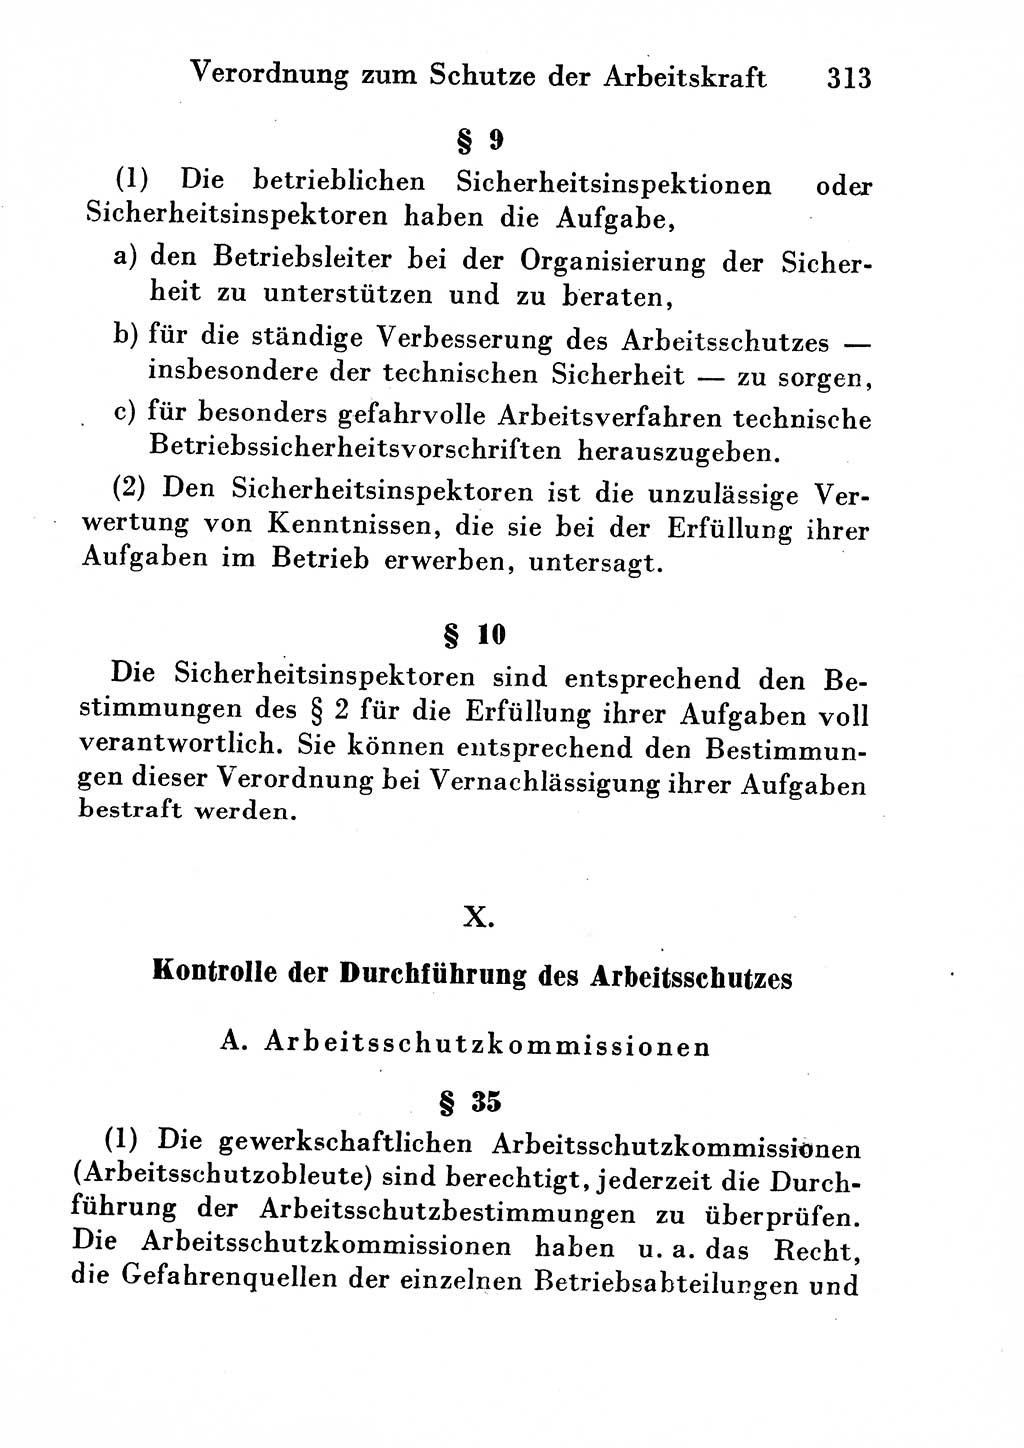 Strafgesetzbuch (StGB) und andere Strafgesetze [Deutsche Demokratische Republik (DDR)] 1954, Seite 313 (StGB Strafges. DDR 1954, S. 313)